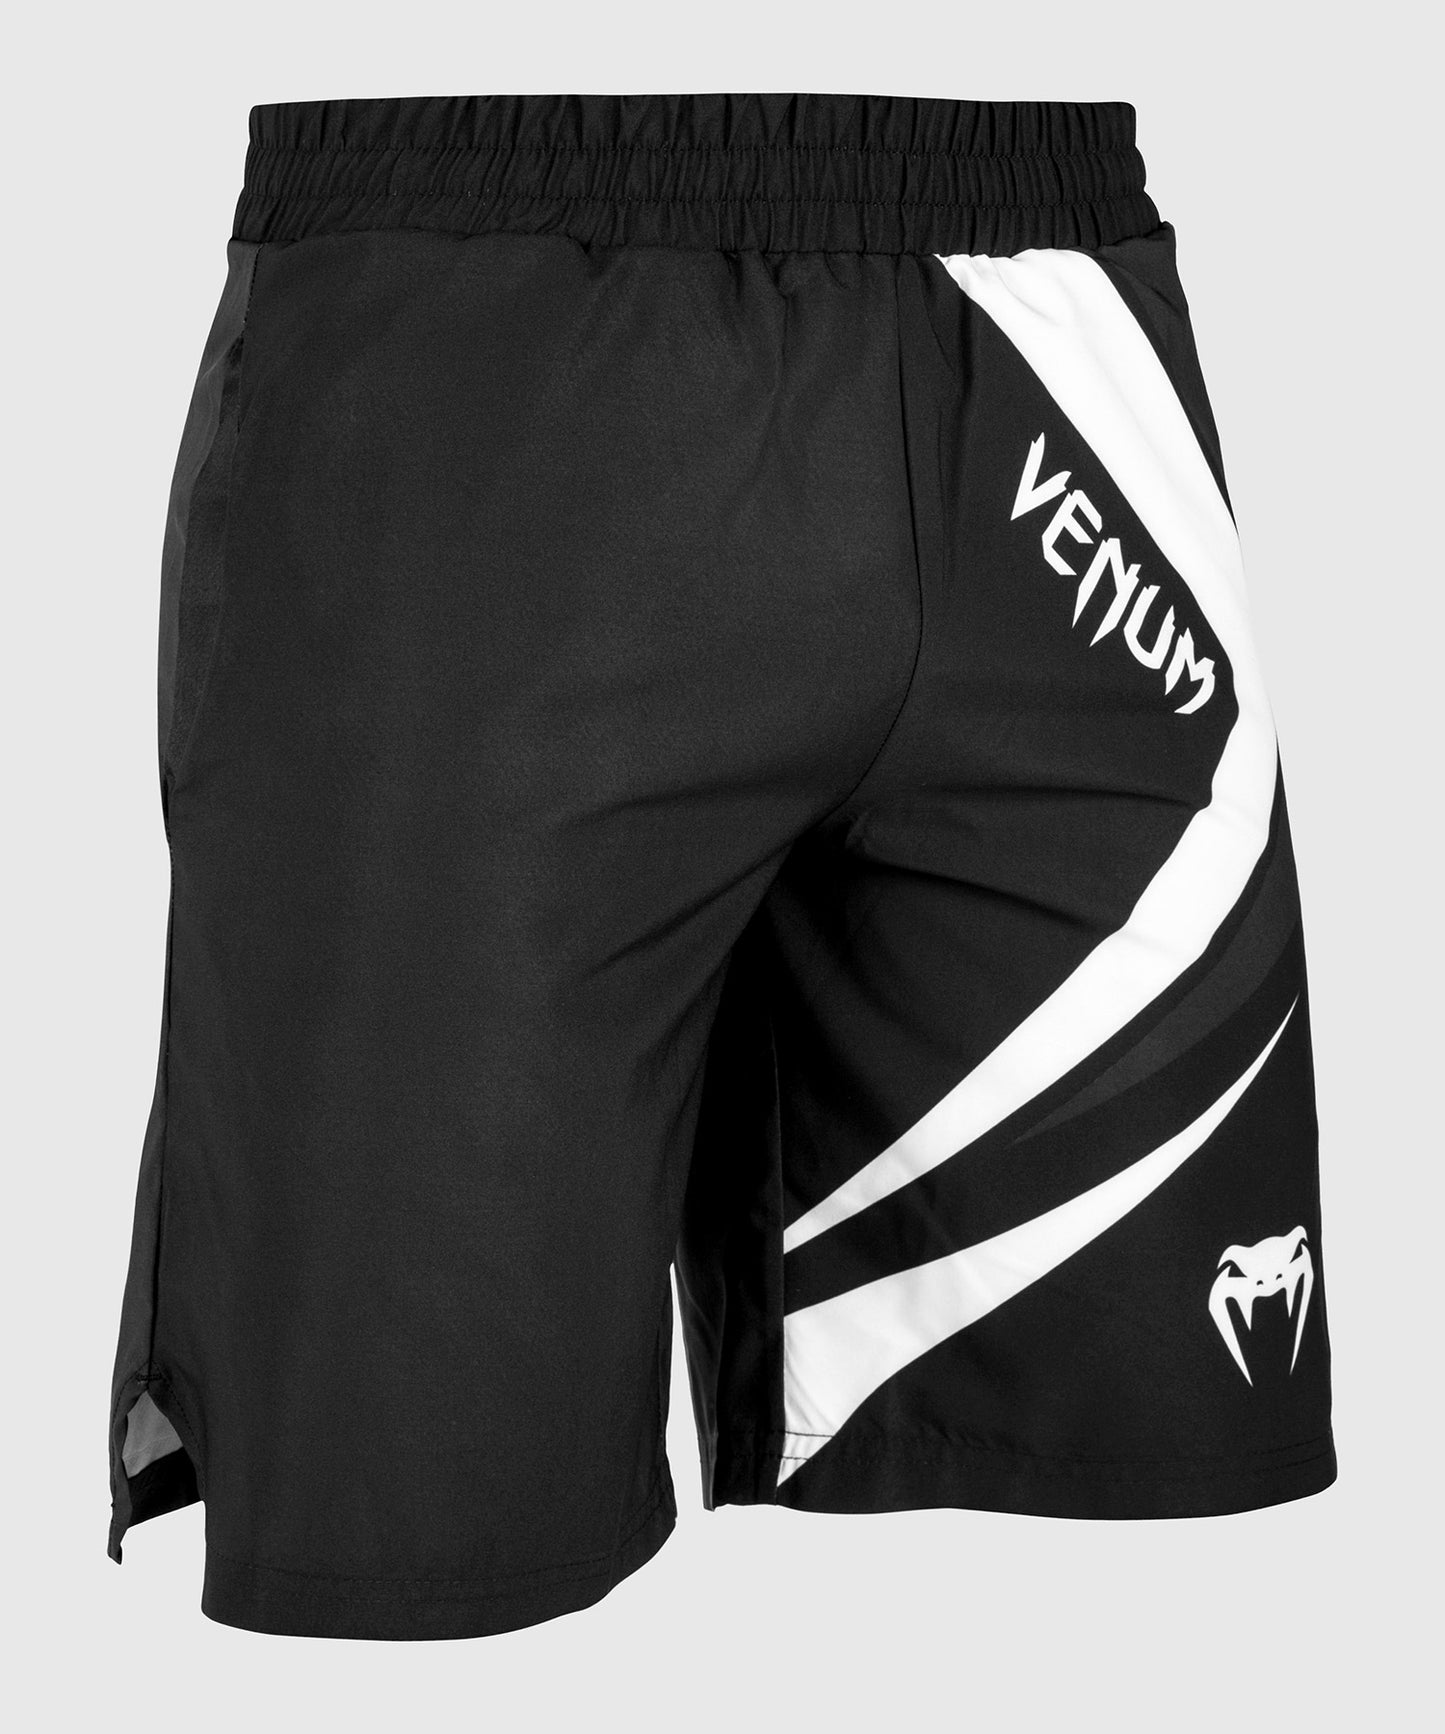 Pantalones cortos deportivos Venum Contender 4.0 - Negro/Gris-Blanco